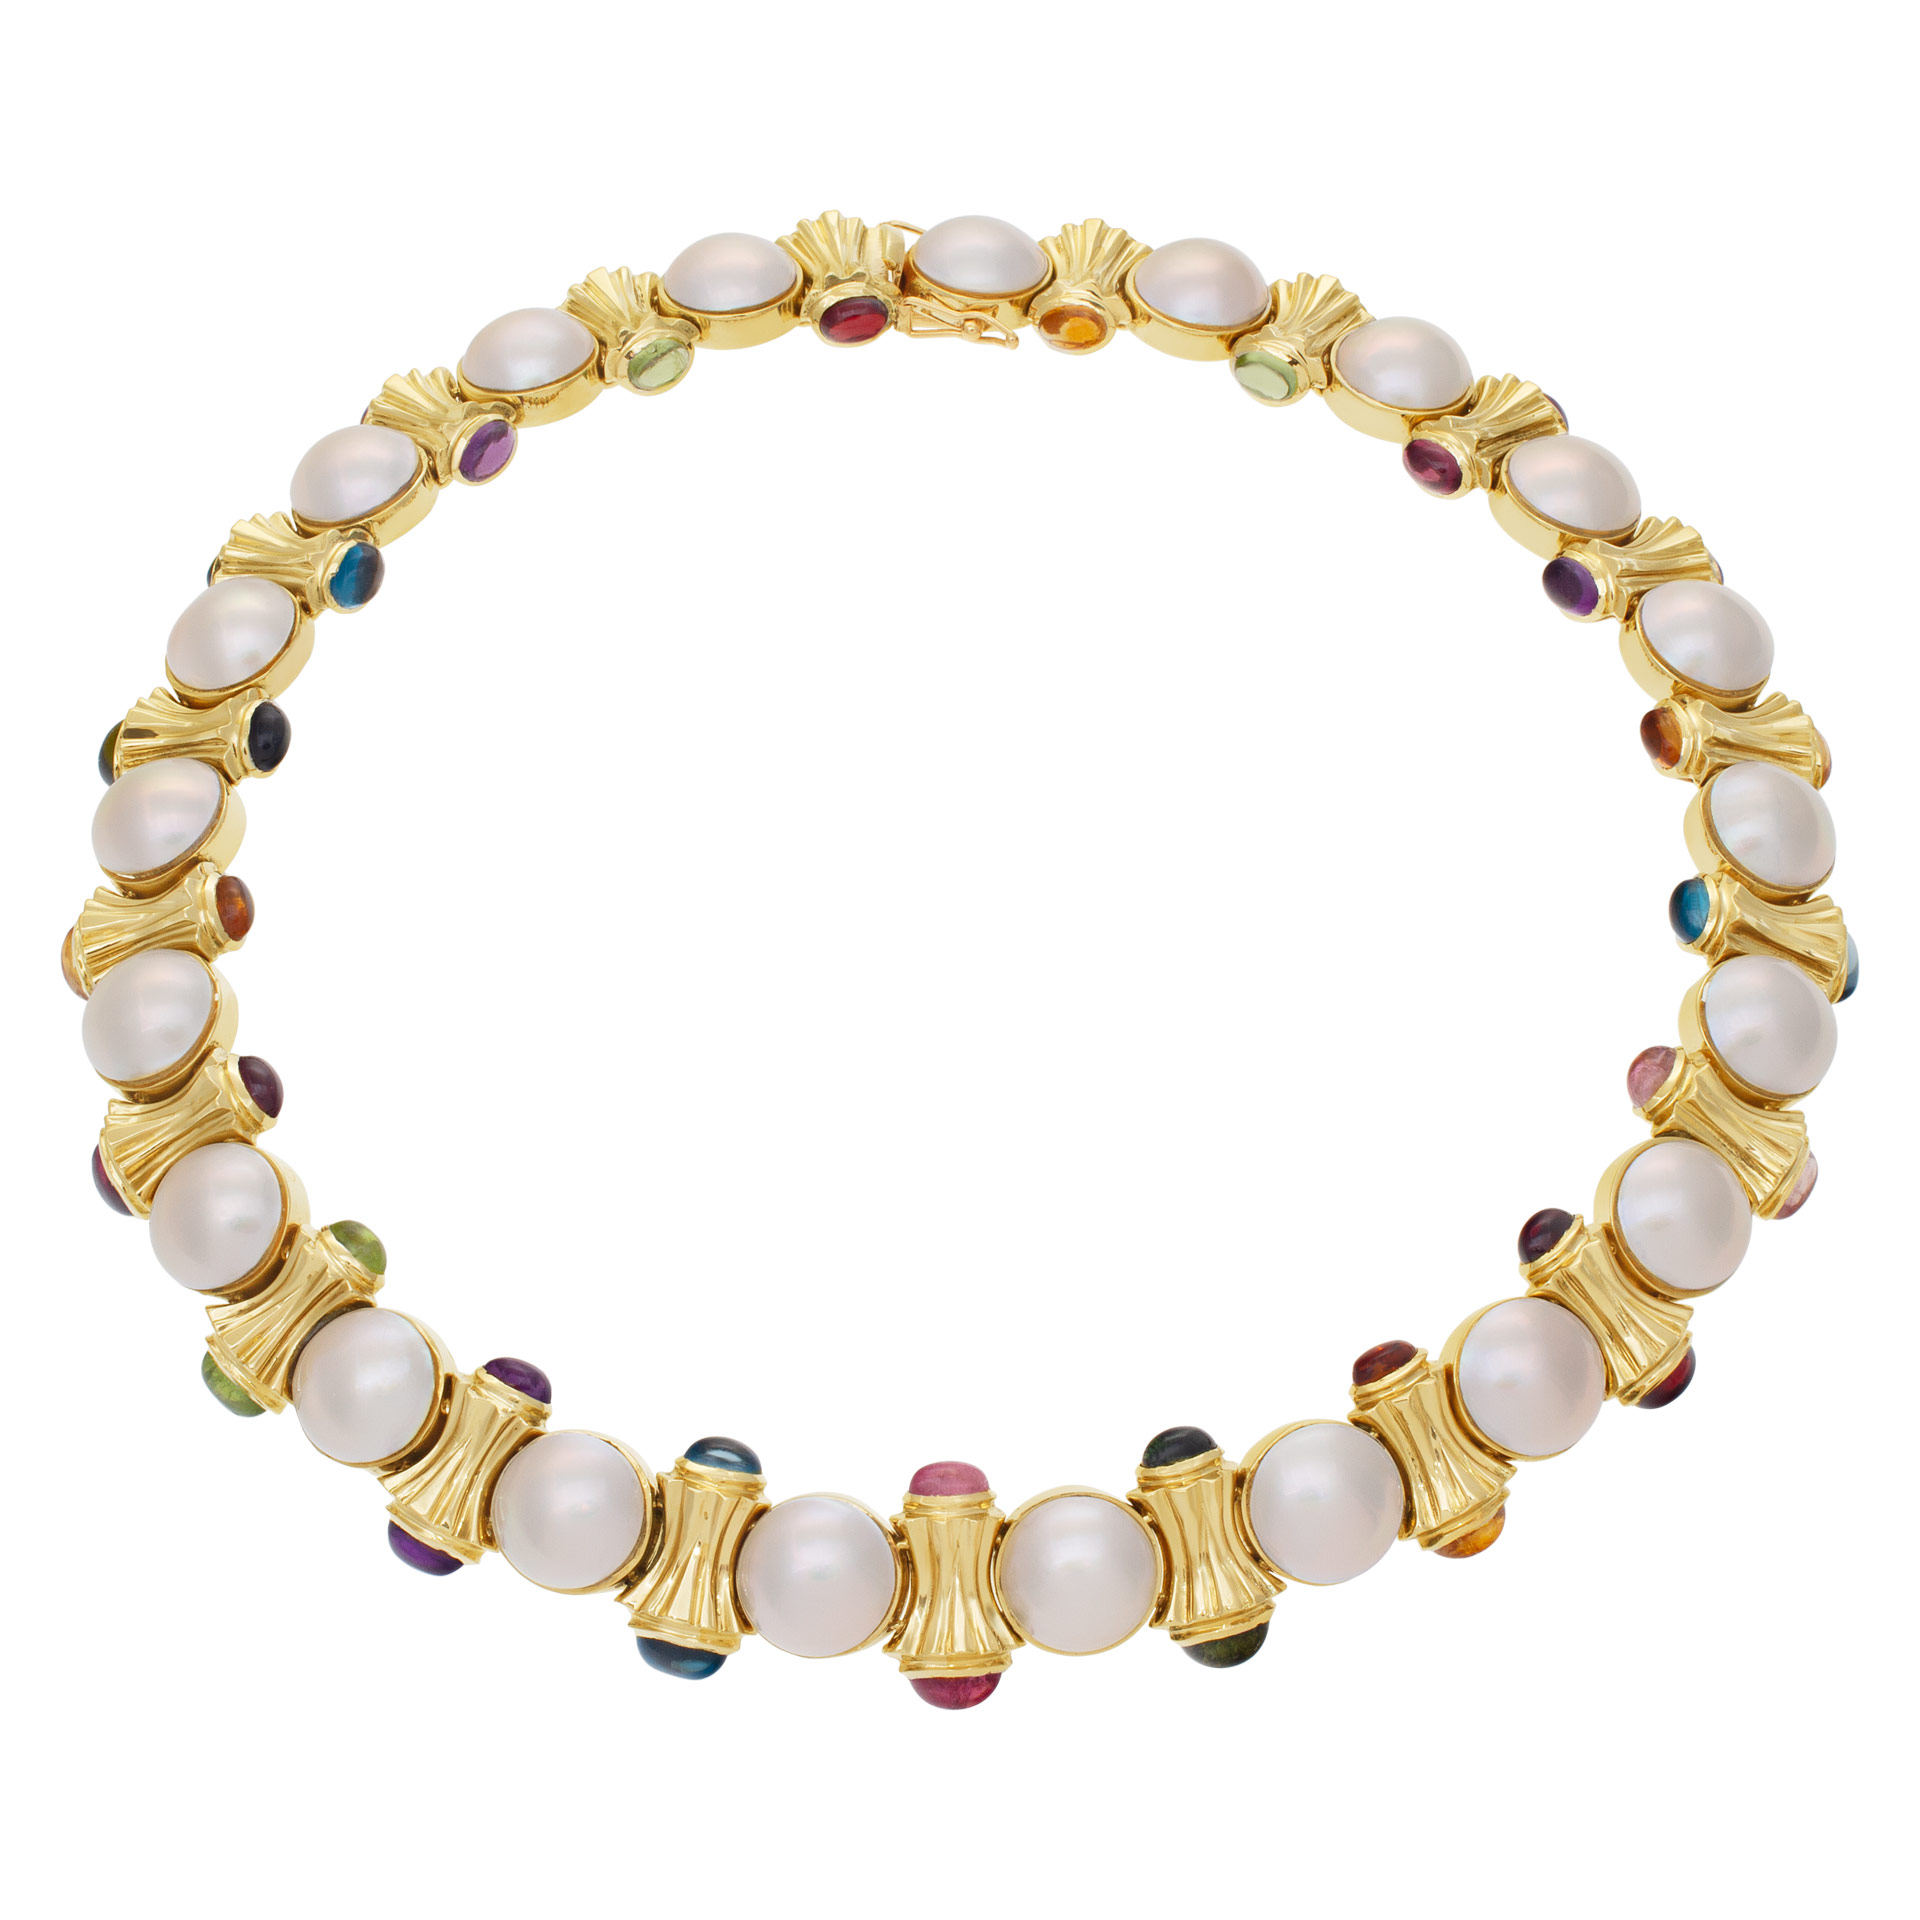 Pearl & semi precious cabochon colored stones choker necklace set in 14K gold. image 1